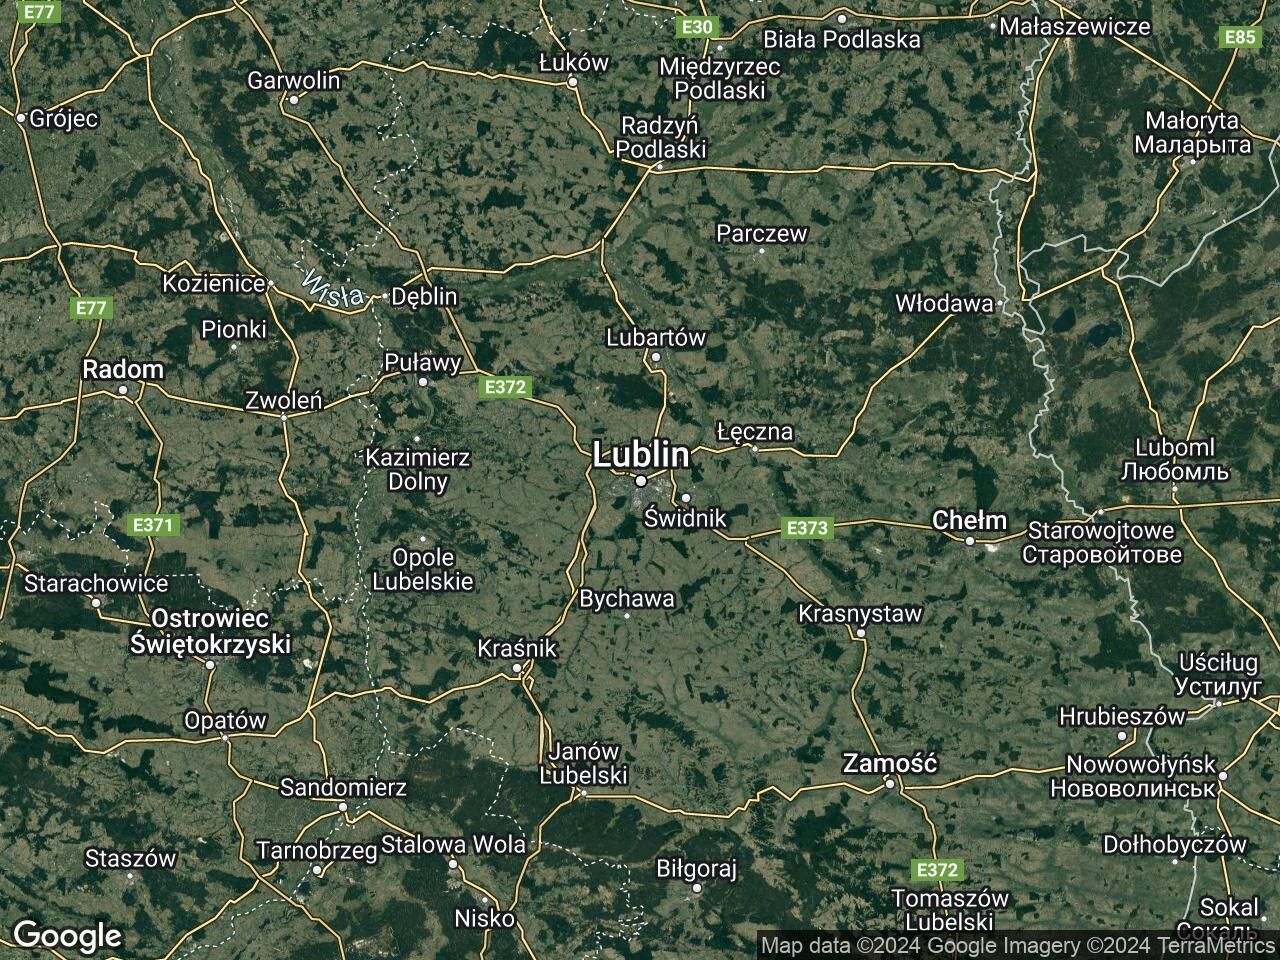 Lokal Lublin Śródmieście, ul. Okopowa